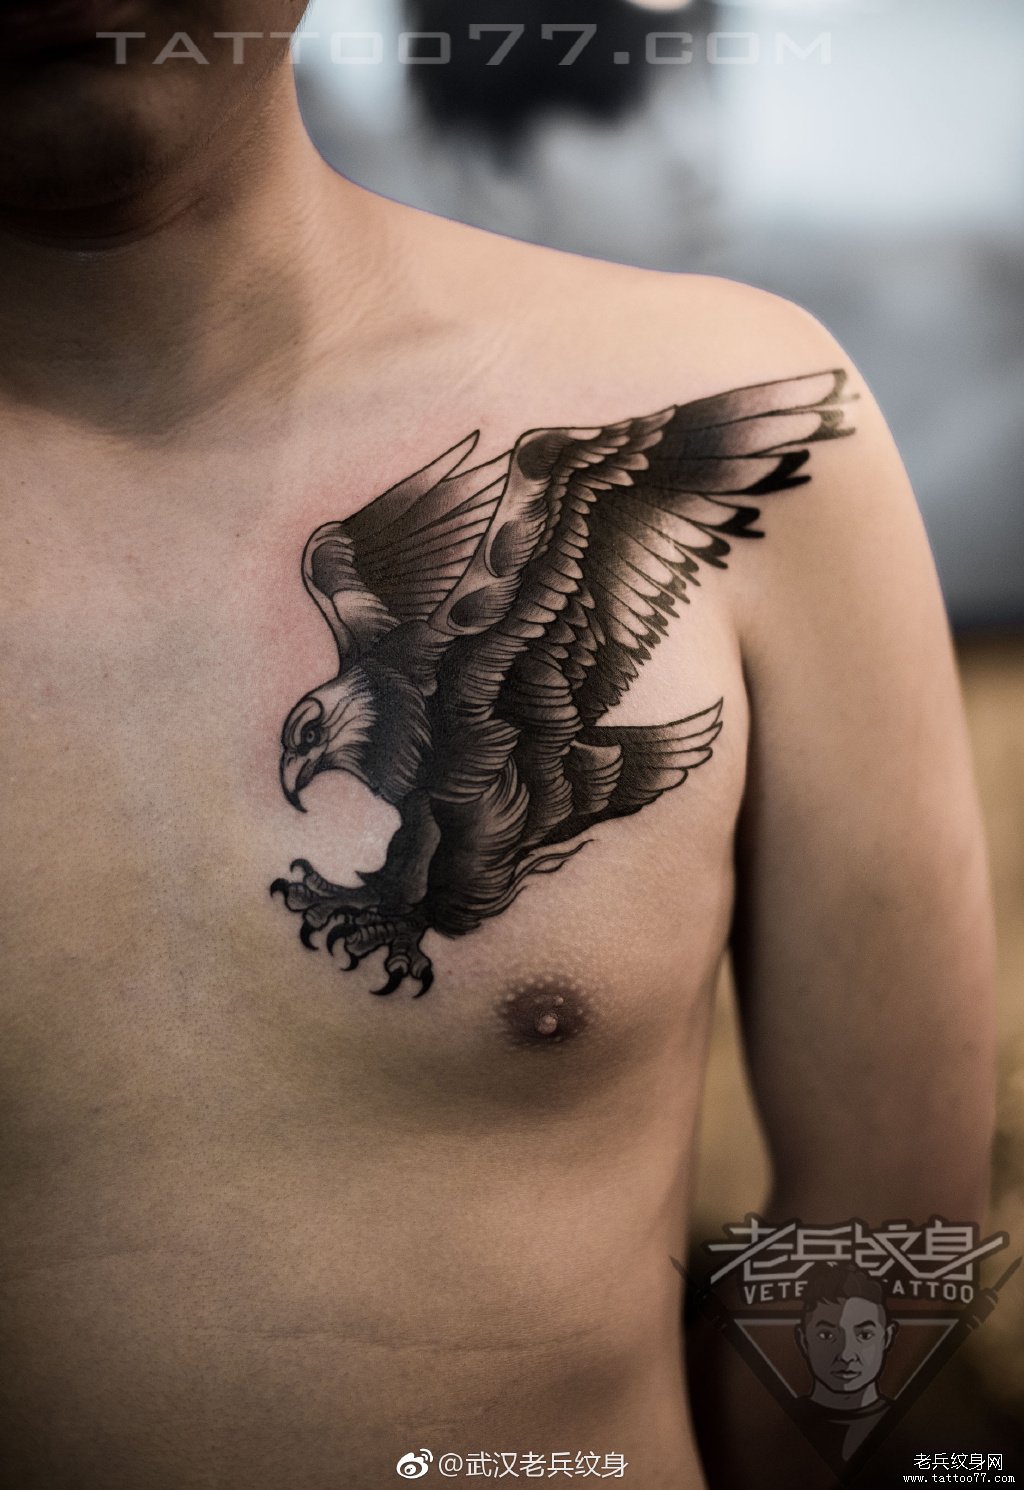 胸部老鹰纹身图案作品